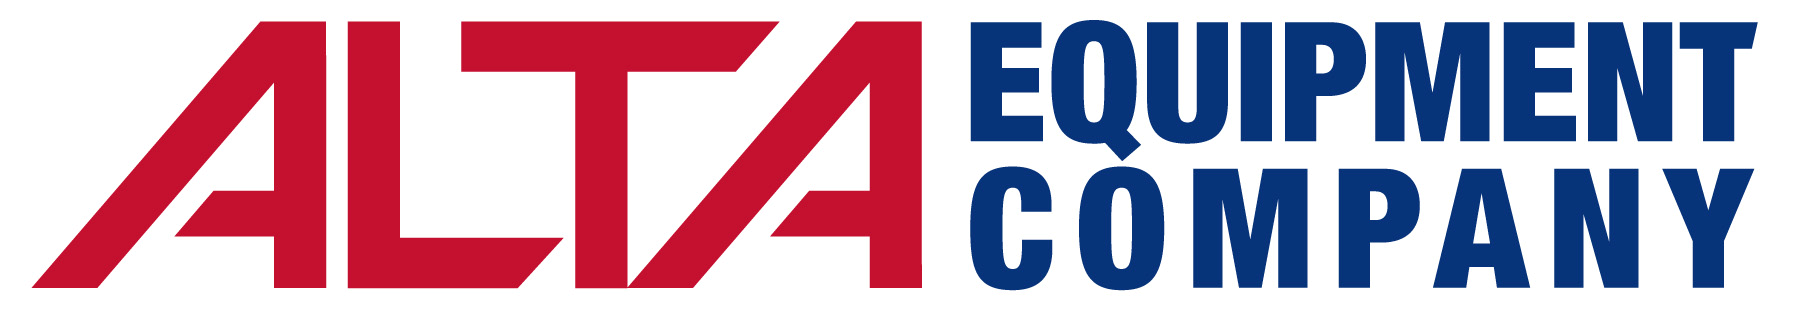 Alta Equipment Company Company Logo